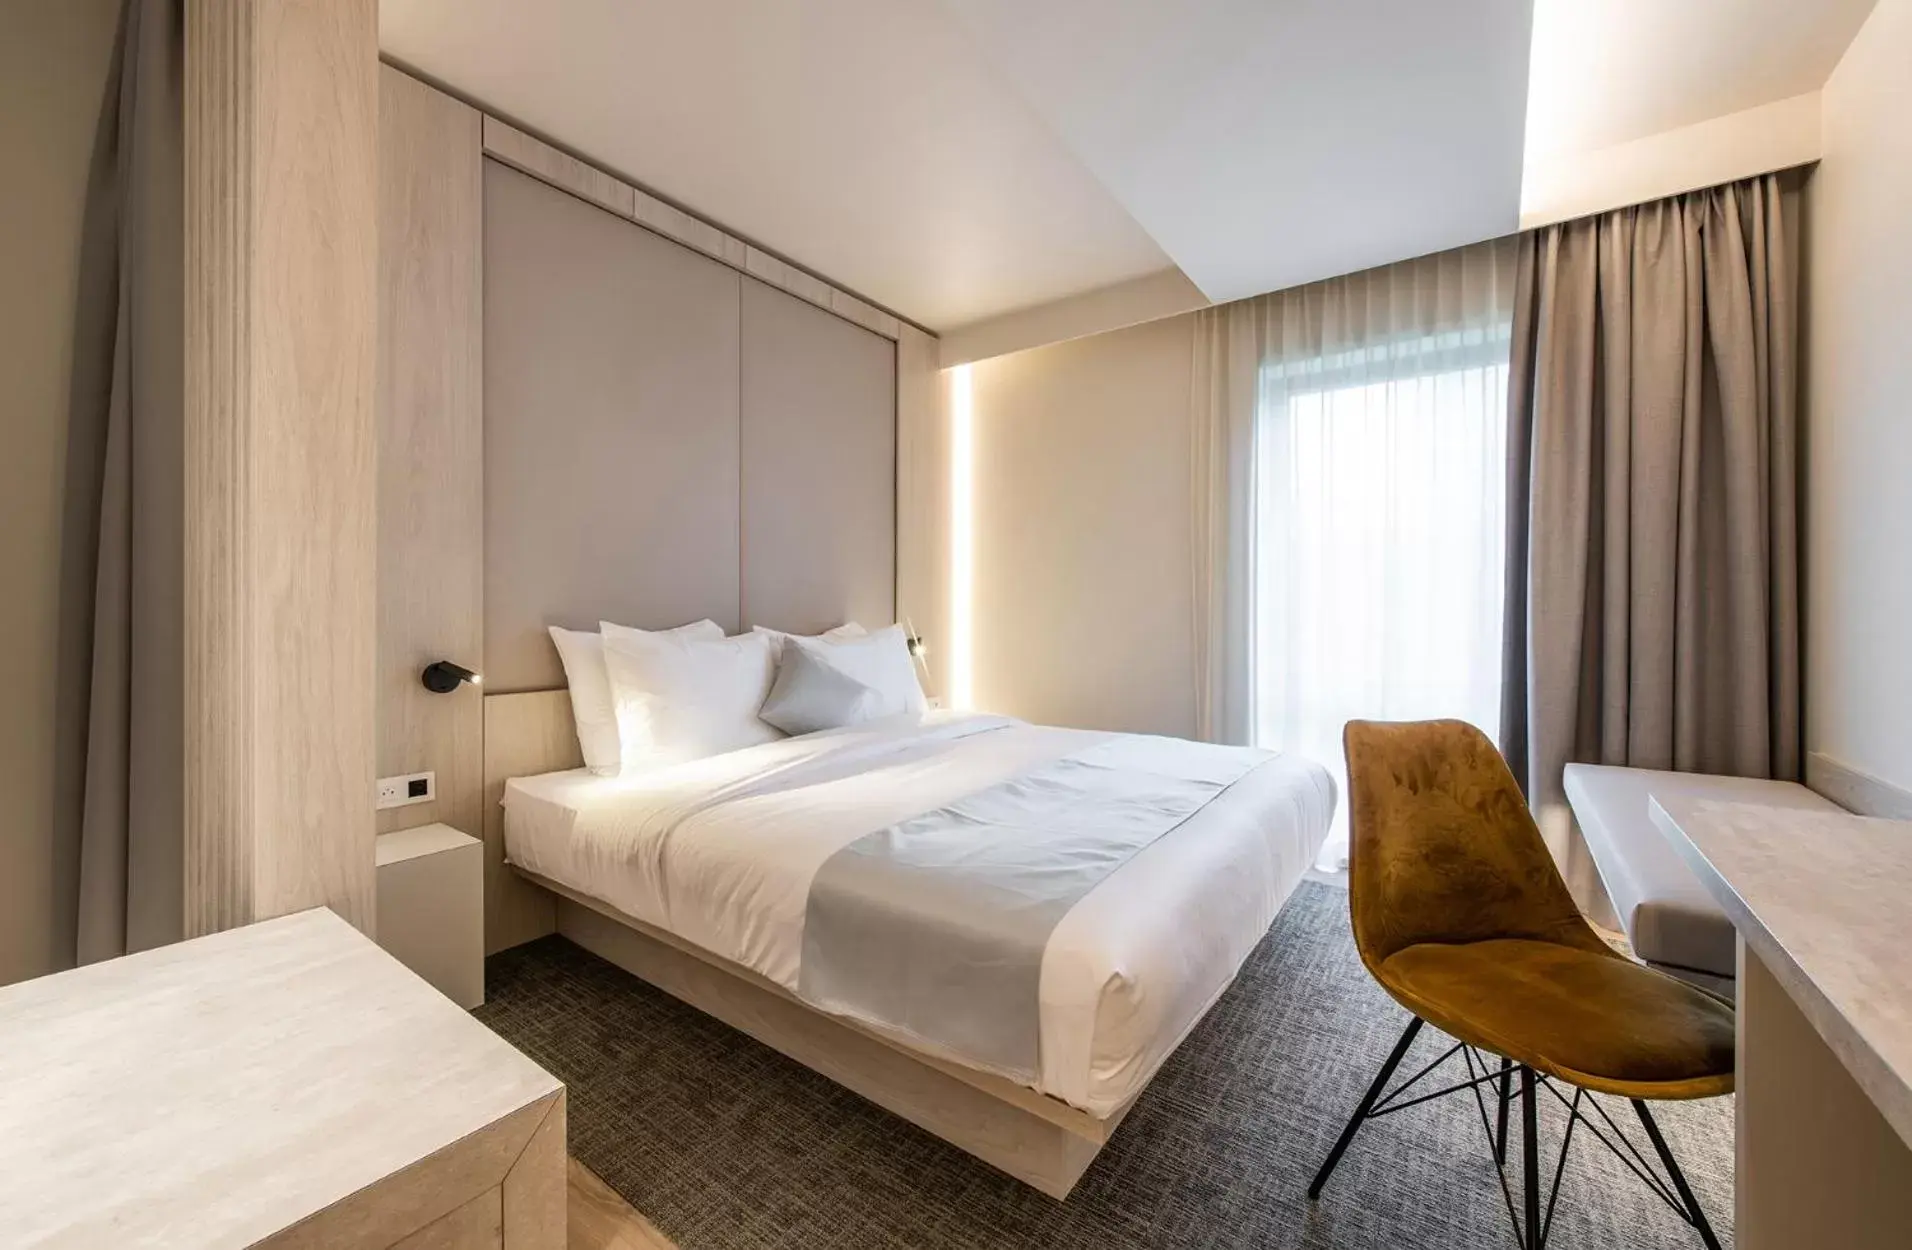 Room Photo in Begijnhof Hotel